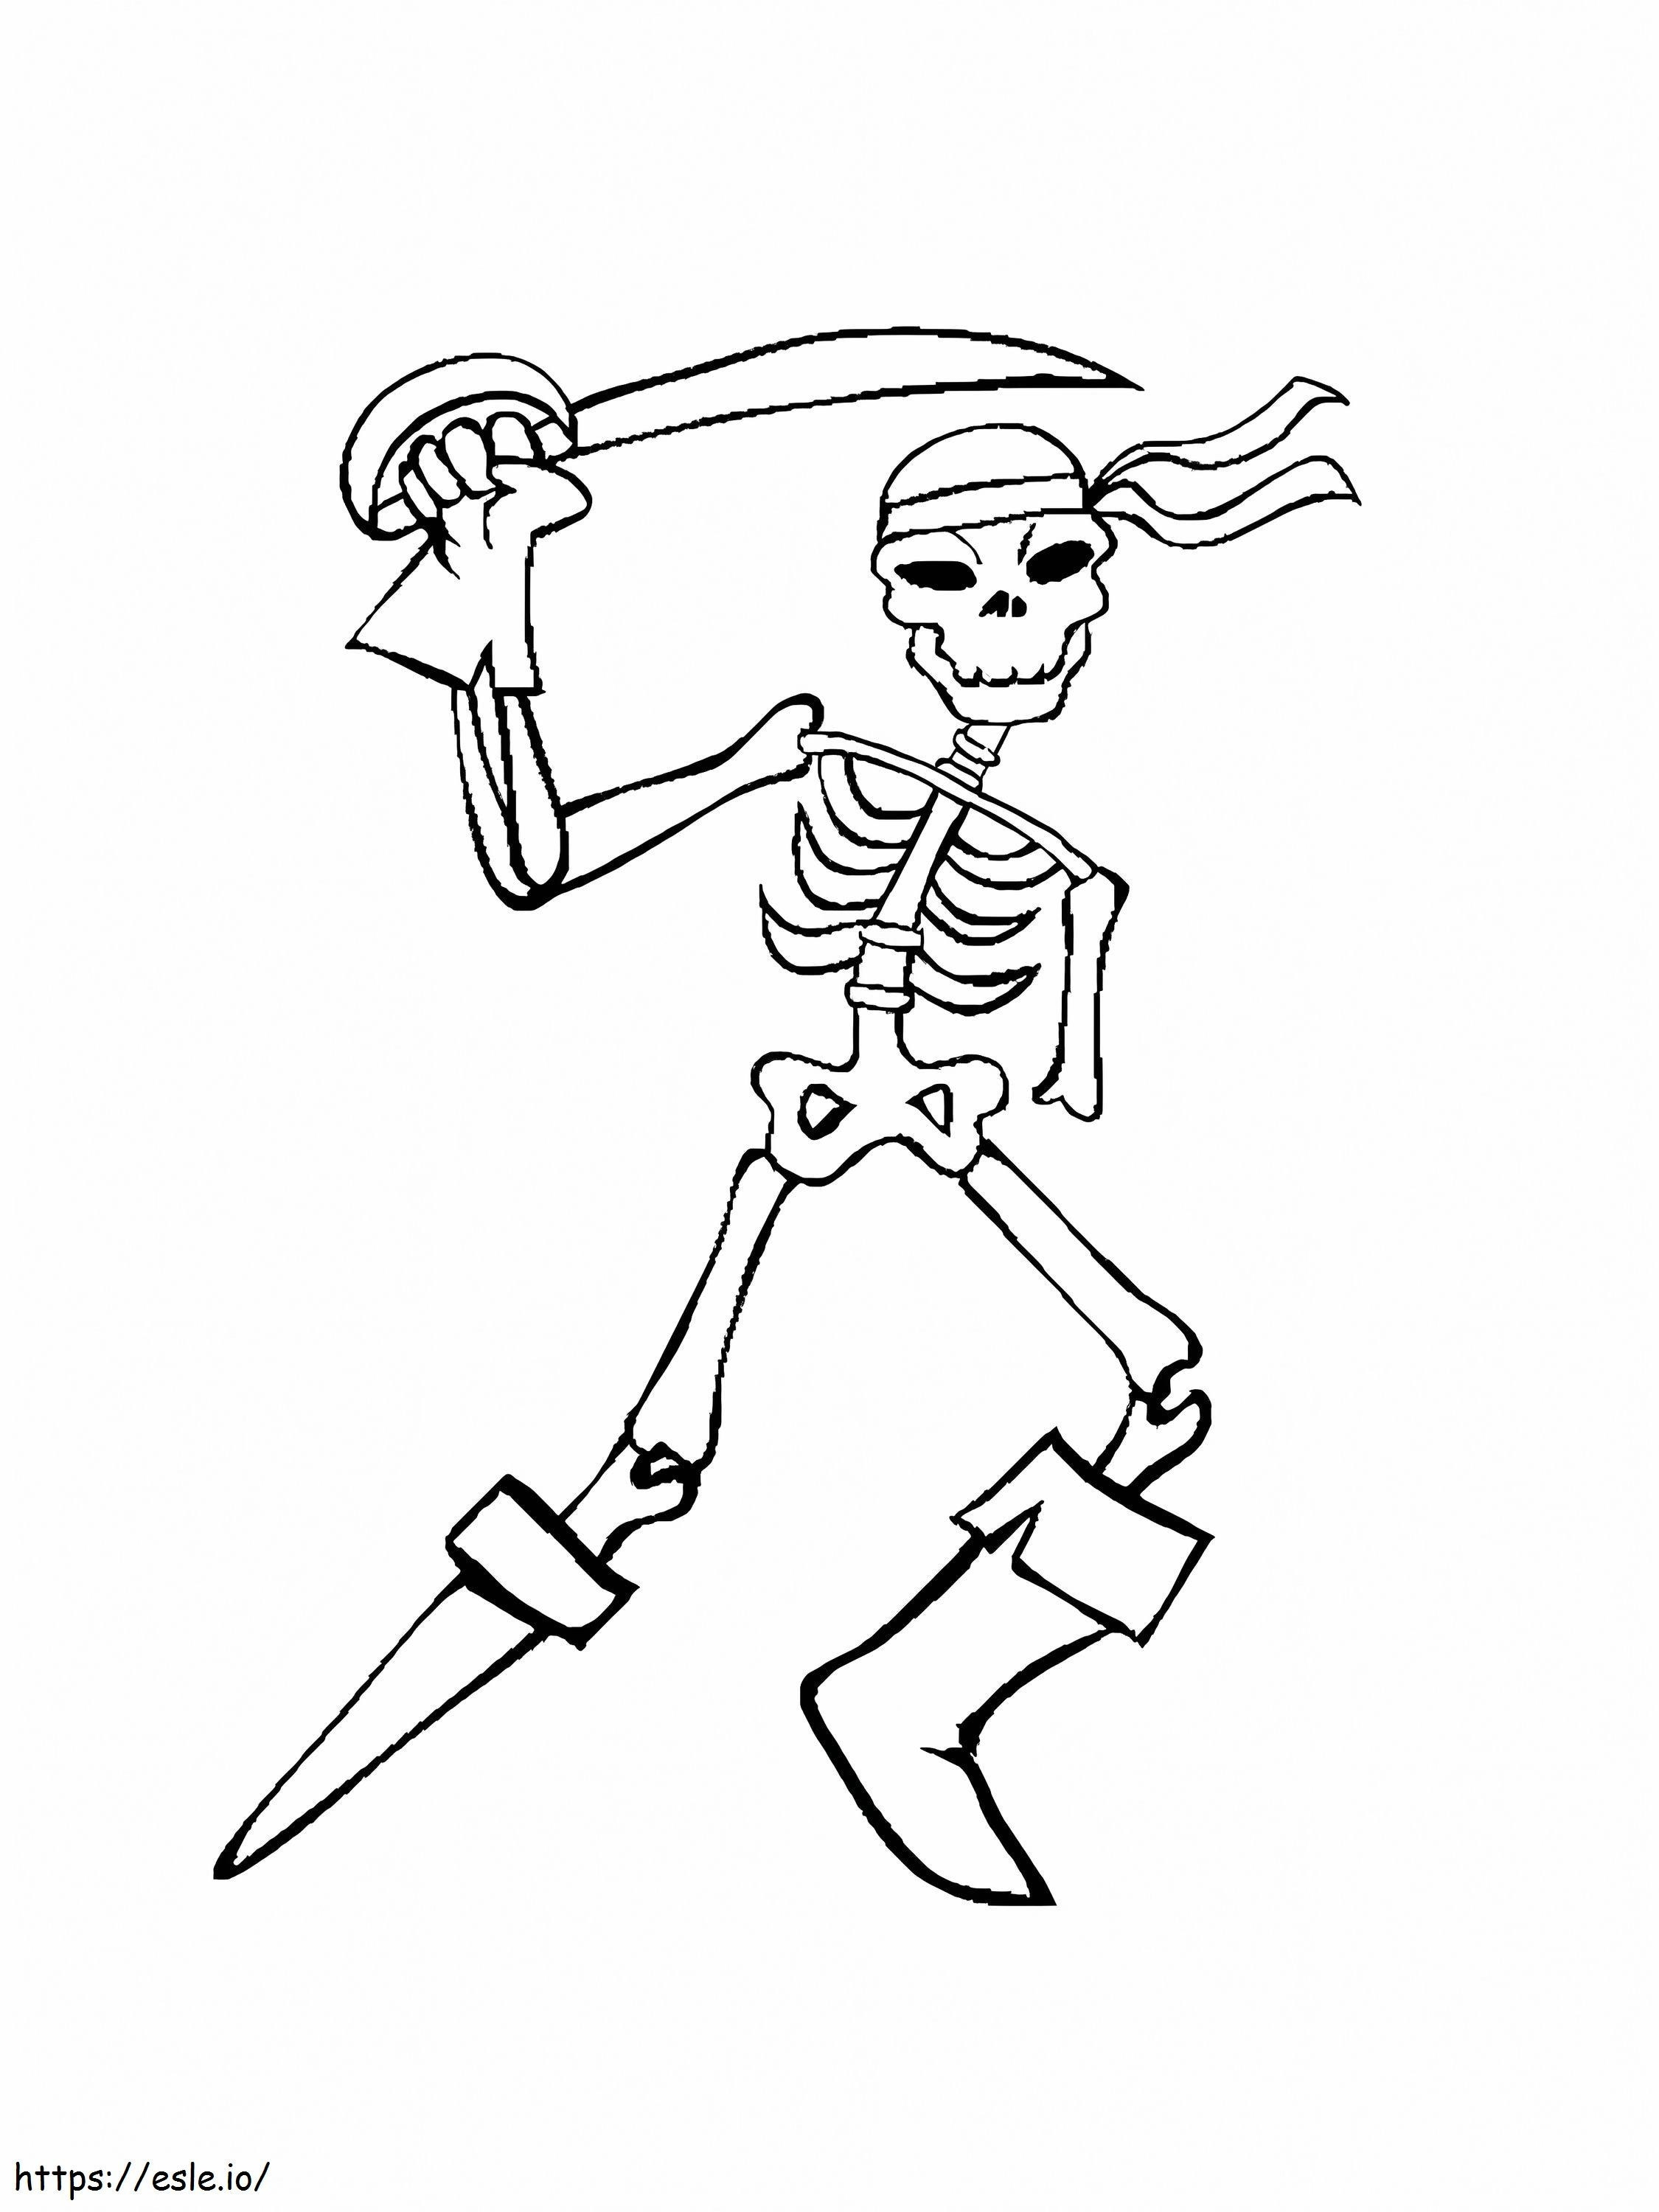 Scheletro pirata con spada da colorare